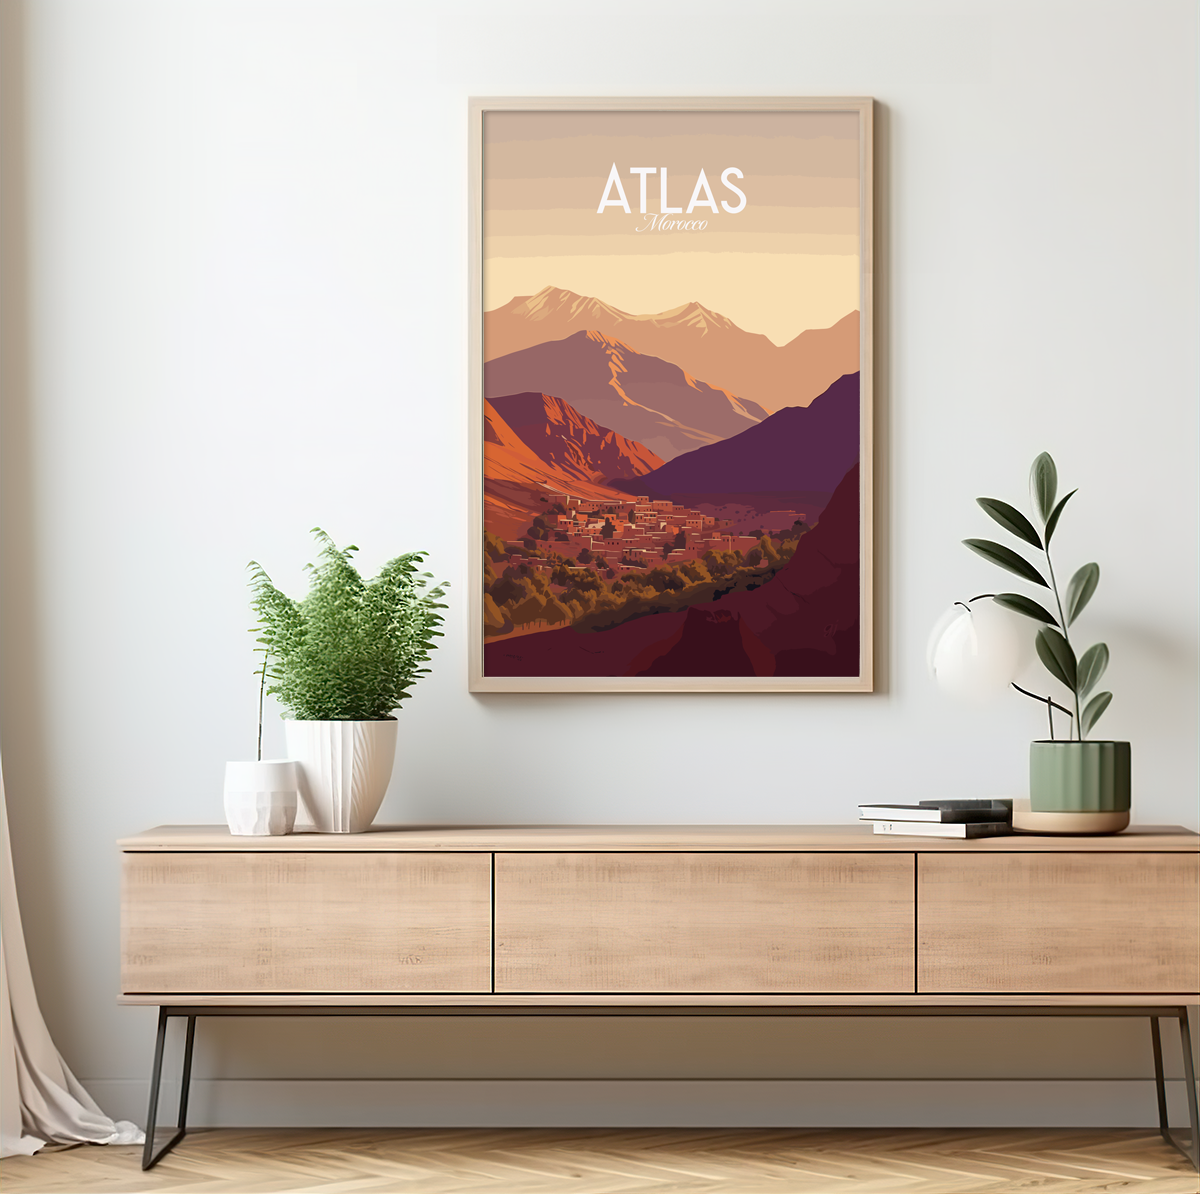 Atlas poster by bon voyage design